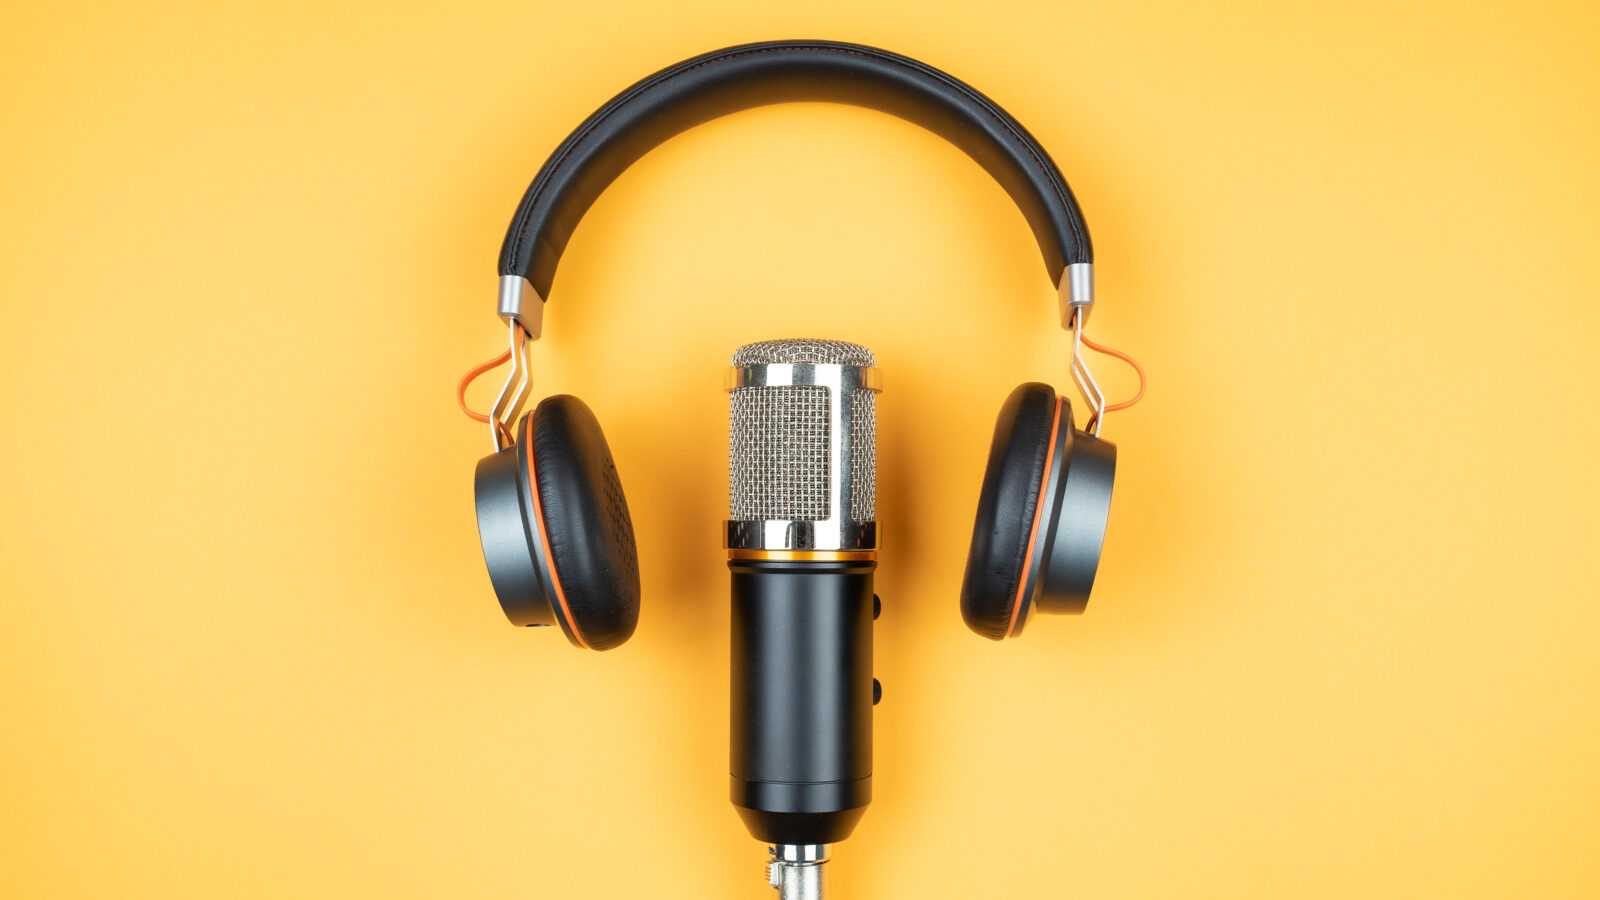 Hoe een audiomix strategie kan zorgen voor een uplift in merkbekendheid